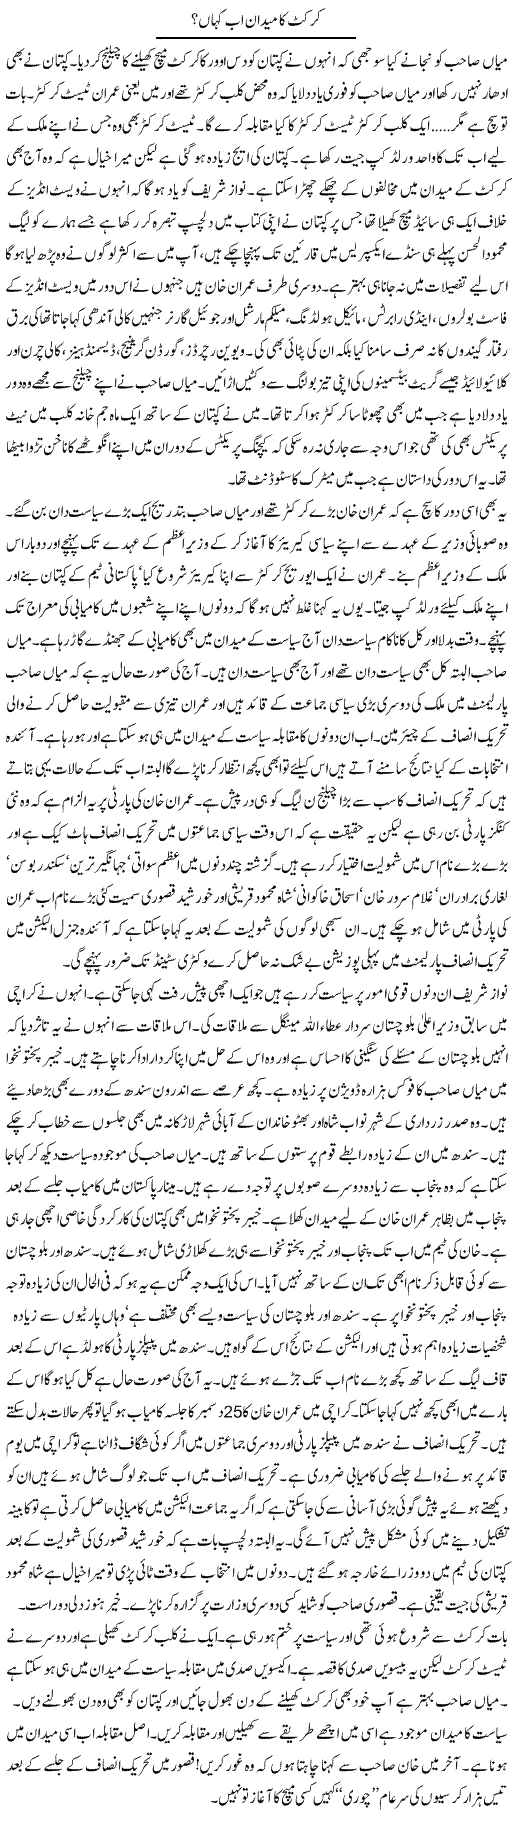 Cricket and Imran Khan Express Column Iyaz Khan 22 December 2011